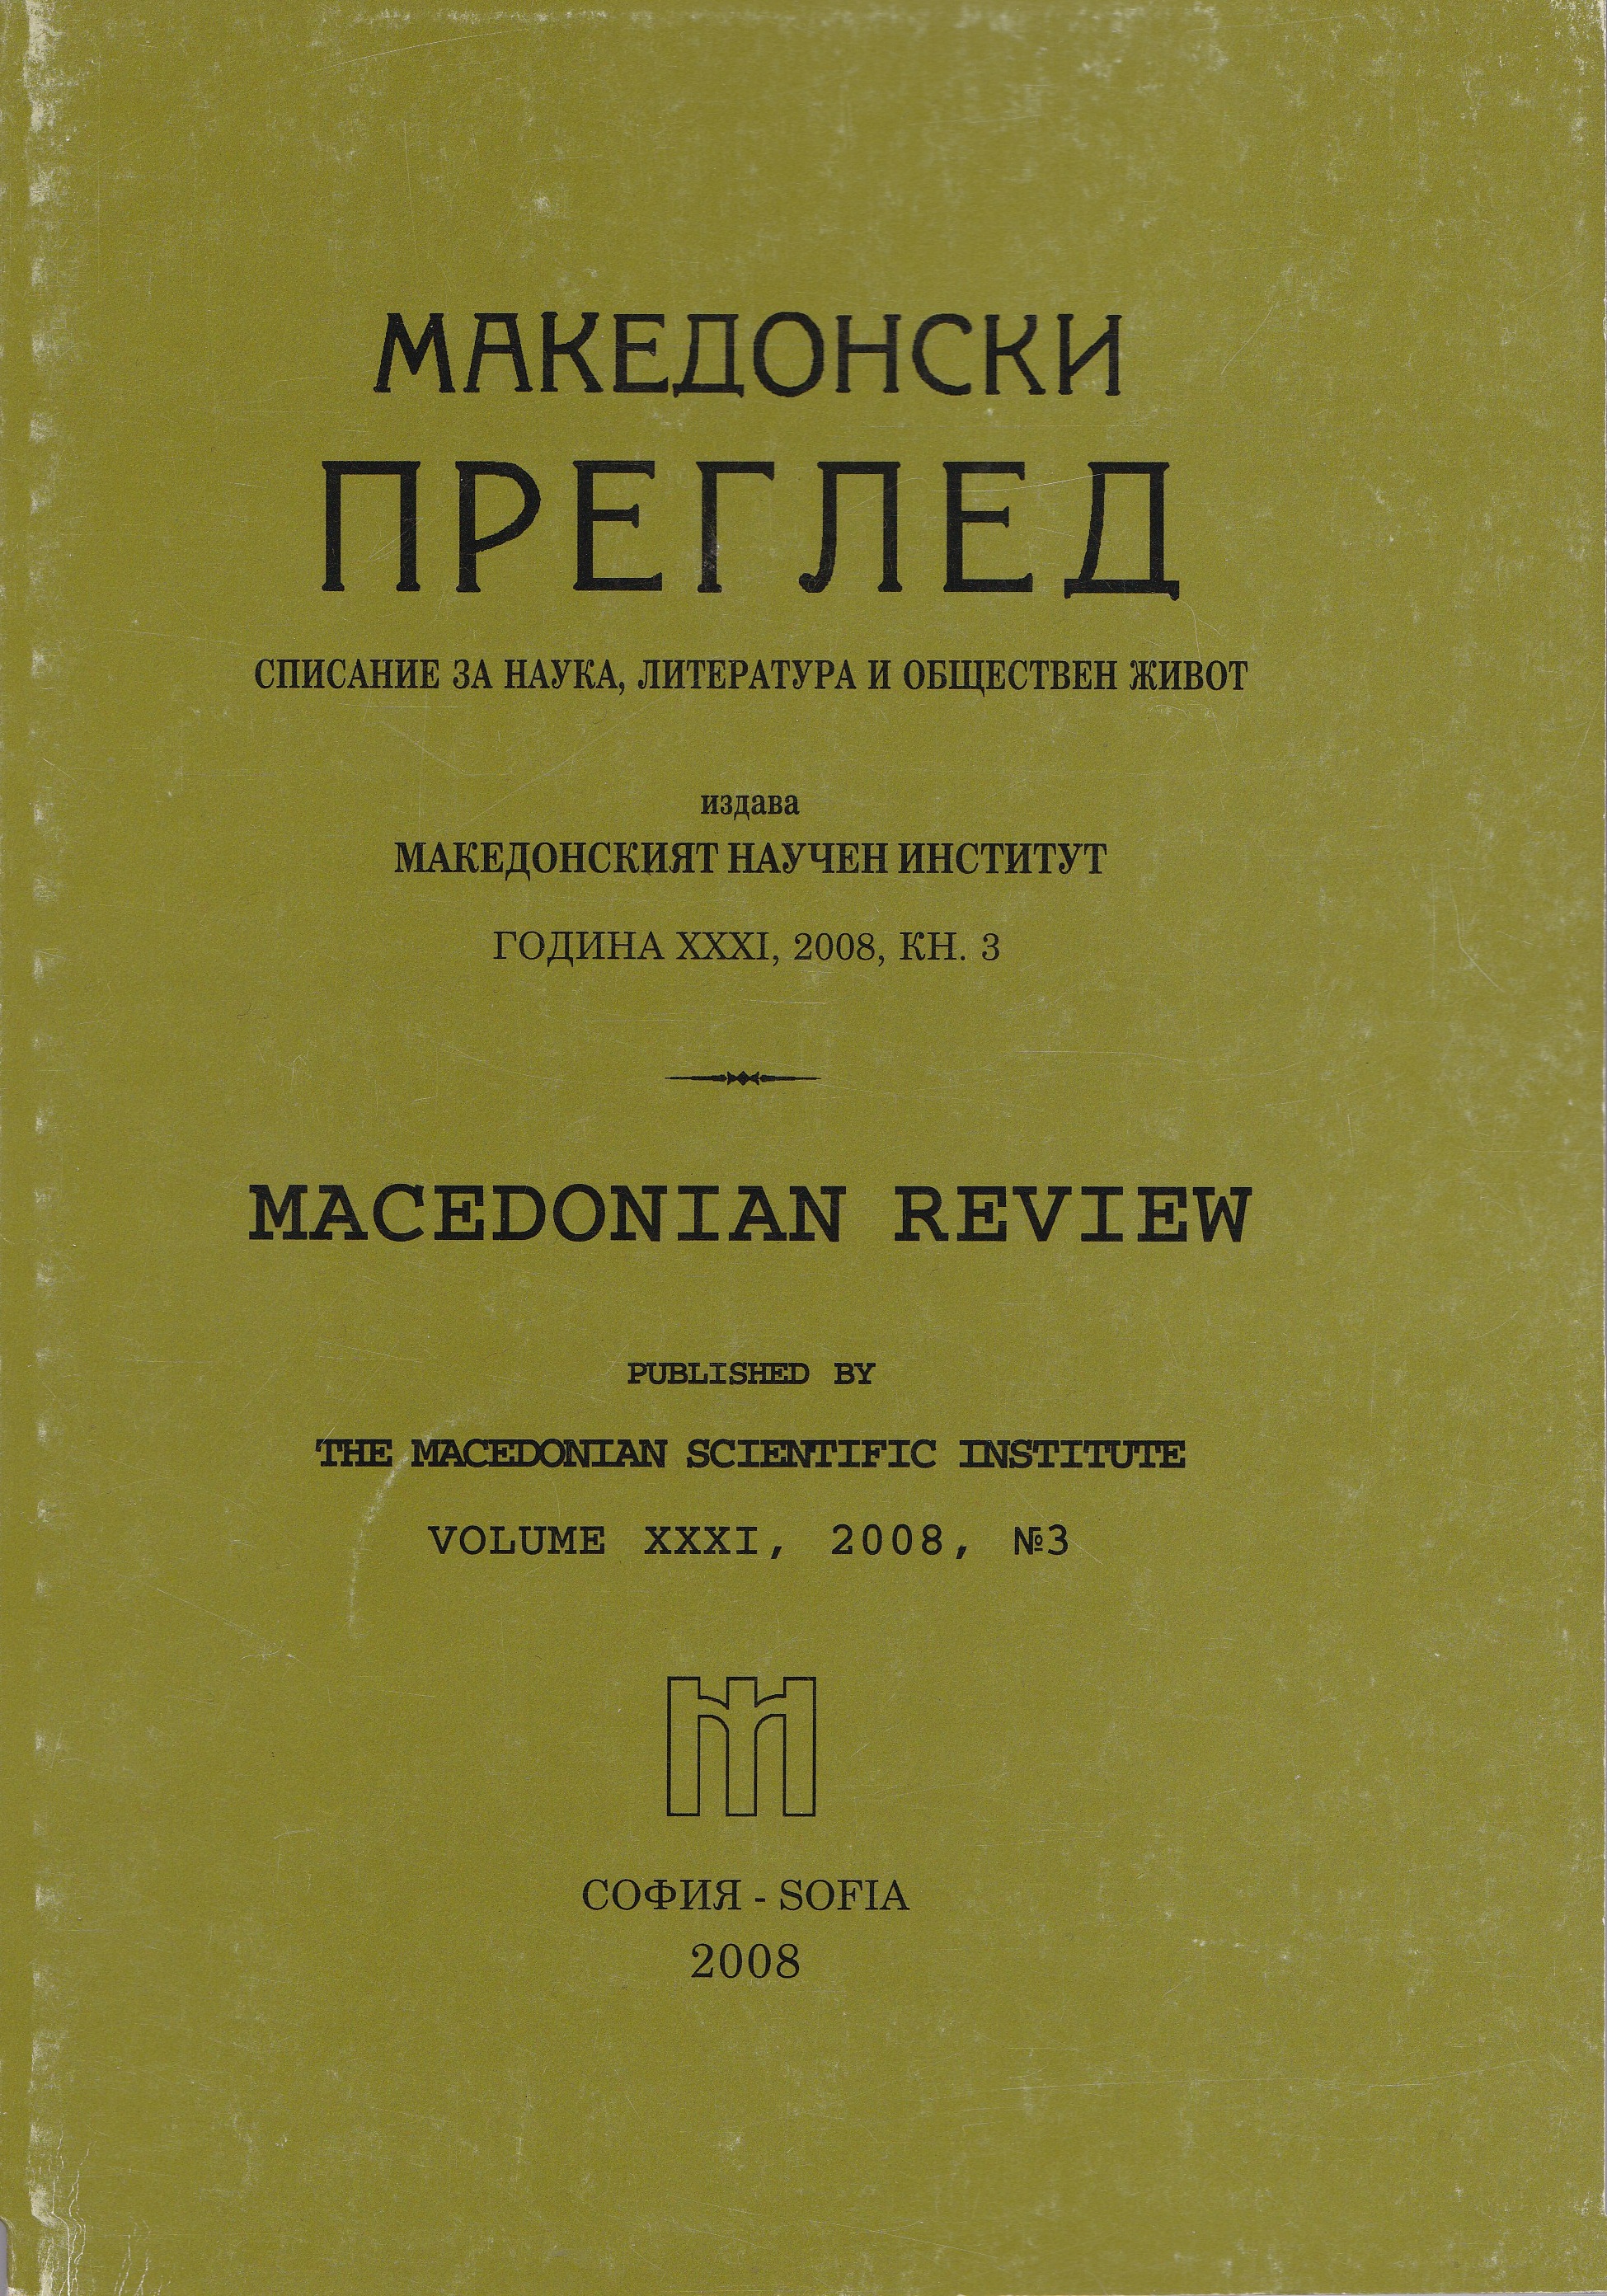 Изложения срещу налагането на идеята за „македонска нация“ в България и за необходимостта от съществуване на Македонския научен институт (ноември 1946 - юли 1947) (Втора част, продължение от бр 2/2008)